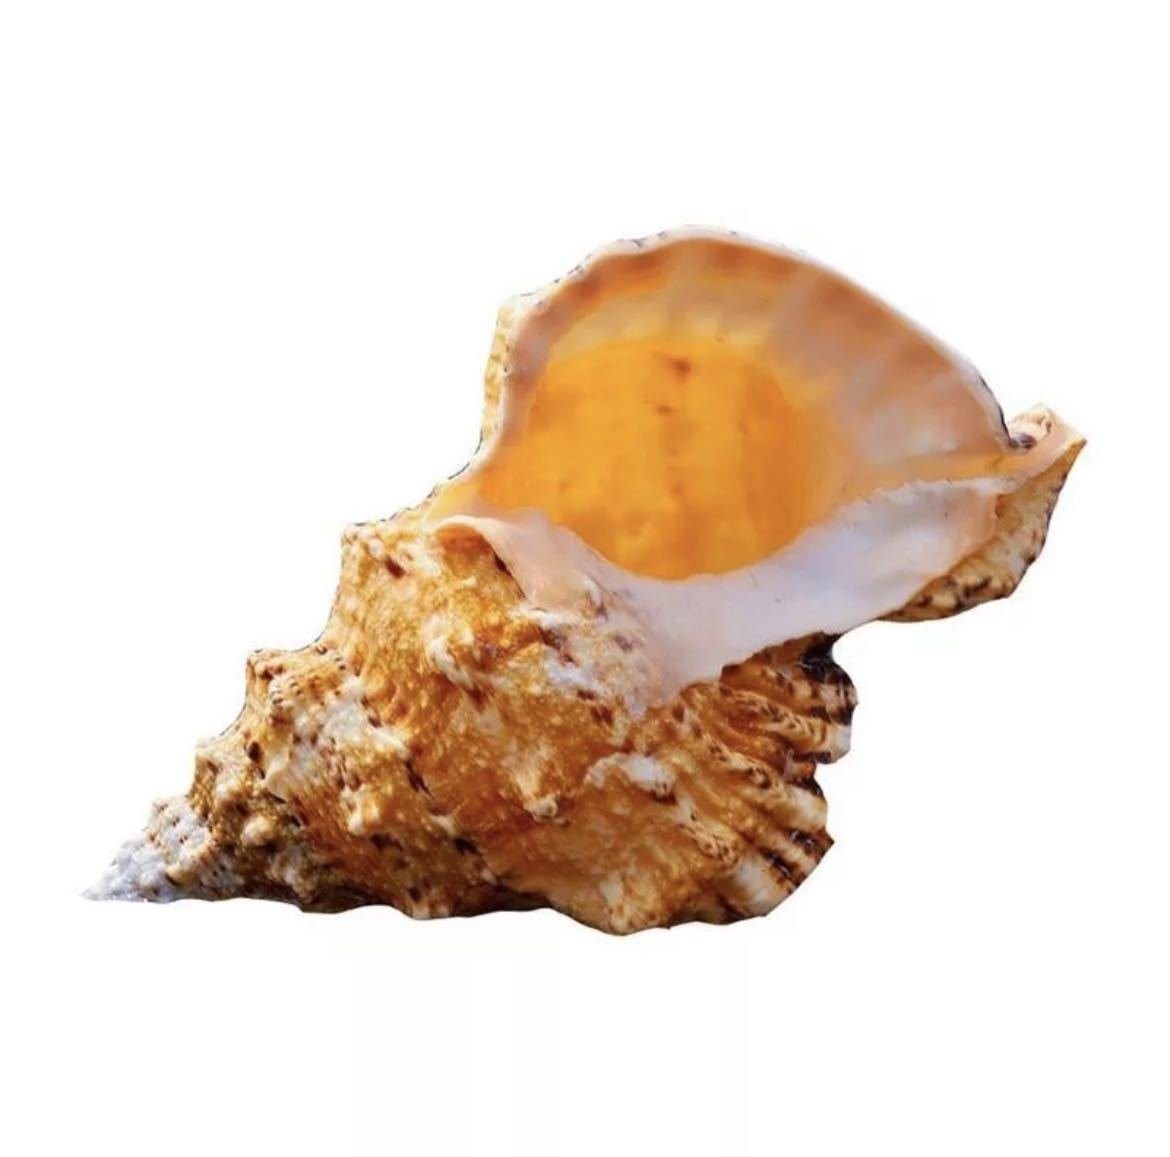 オーナメント ビッグ巻貝 貝殻 法螺貝 貝 海 飾り おしゃれ クリエイティブ インテリア オブジェ 小物 置物 雑貨 巻貝 約20-21cm_画像2